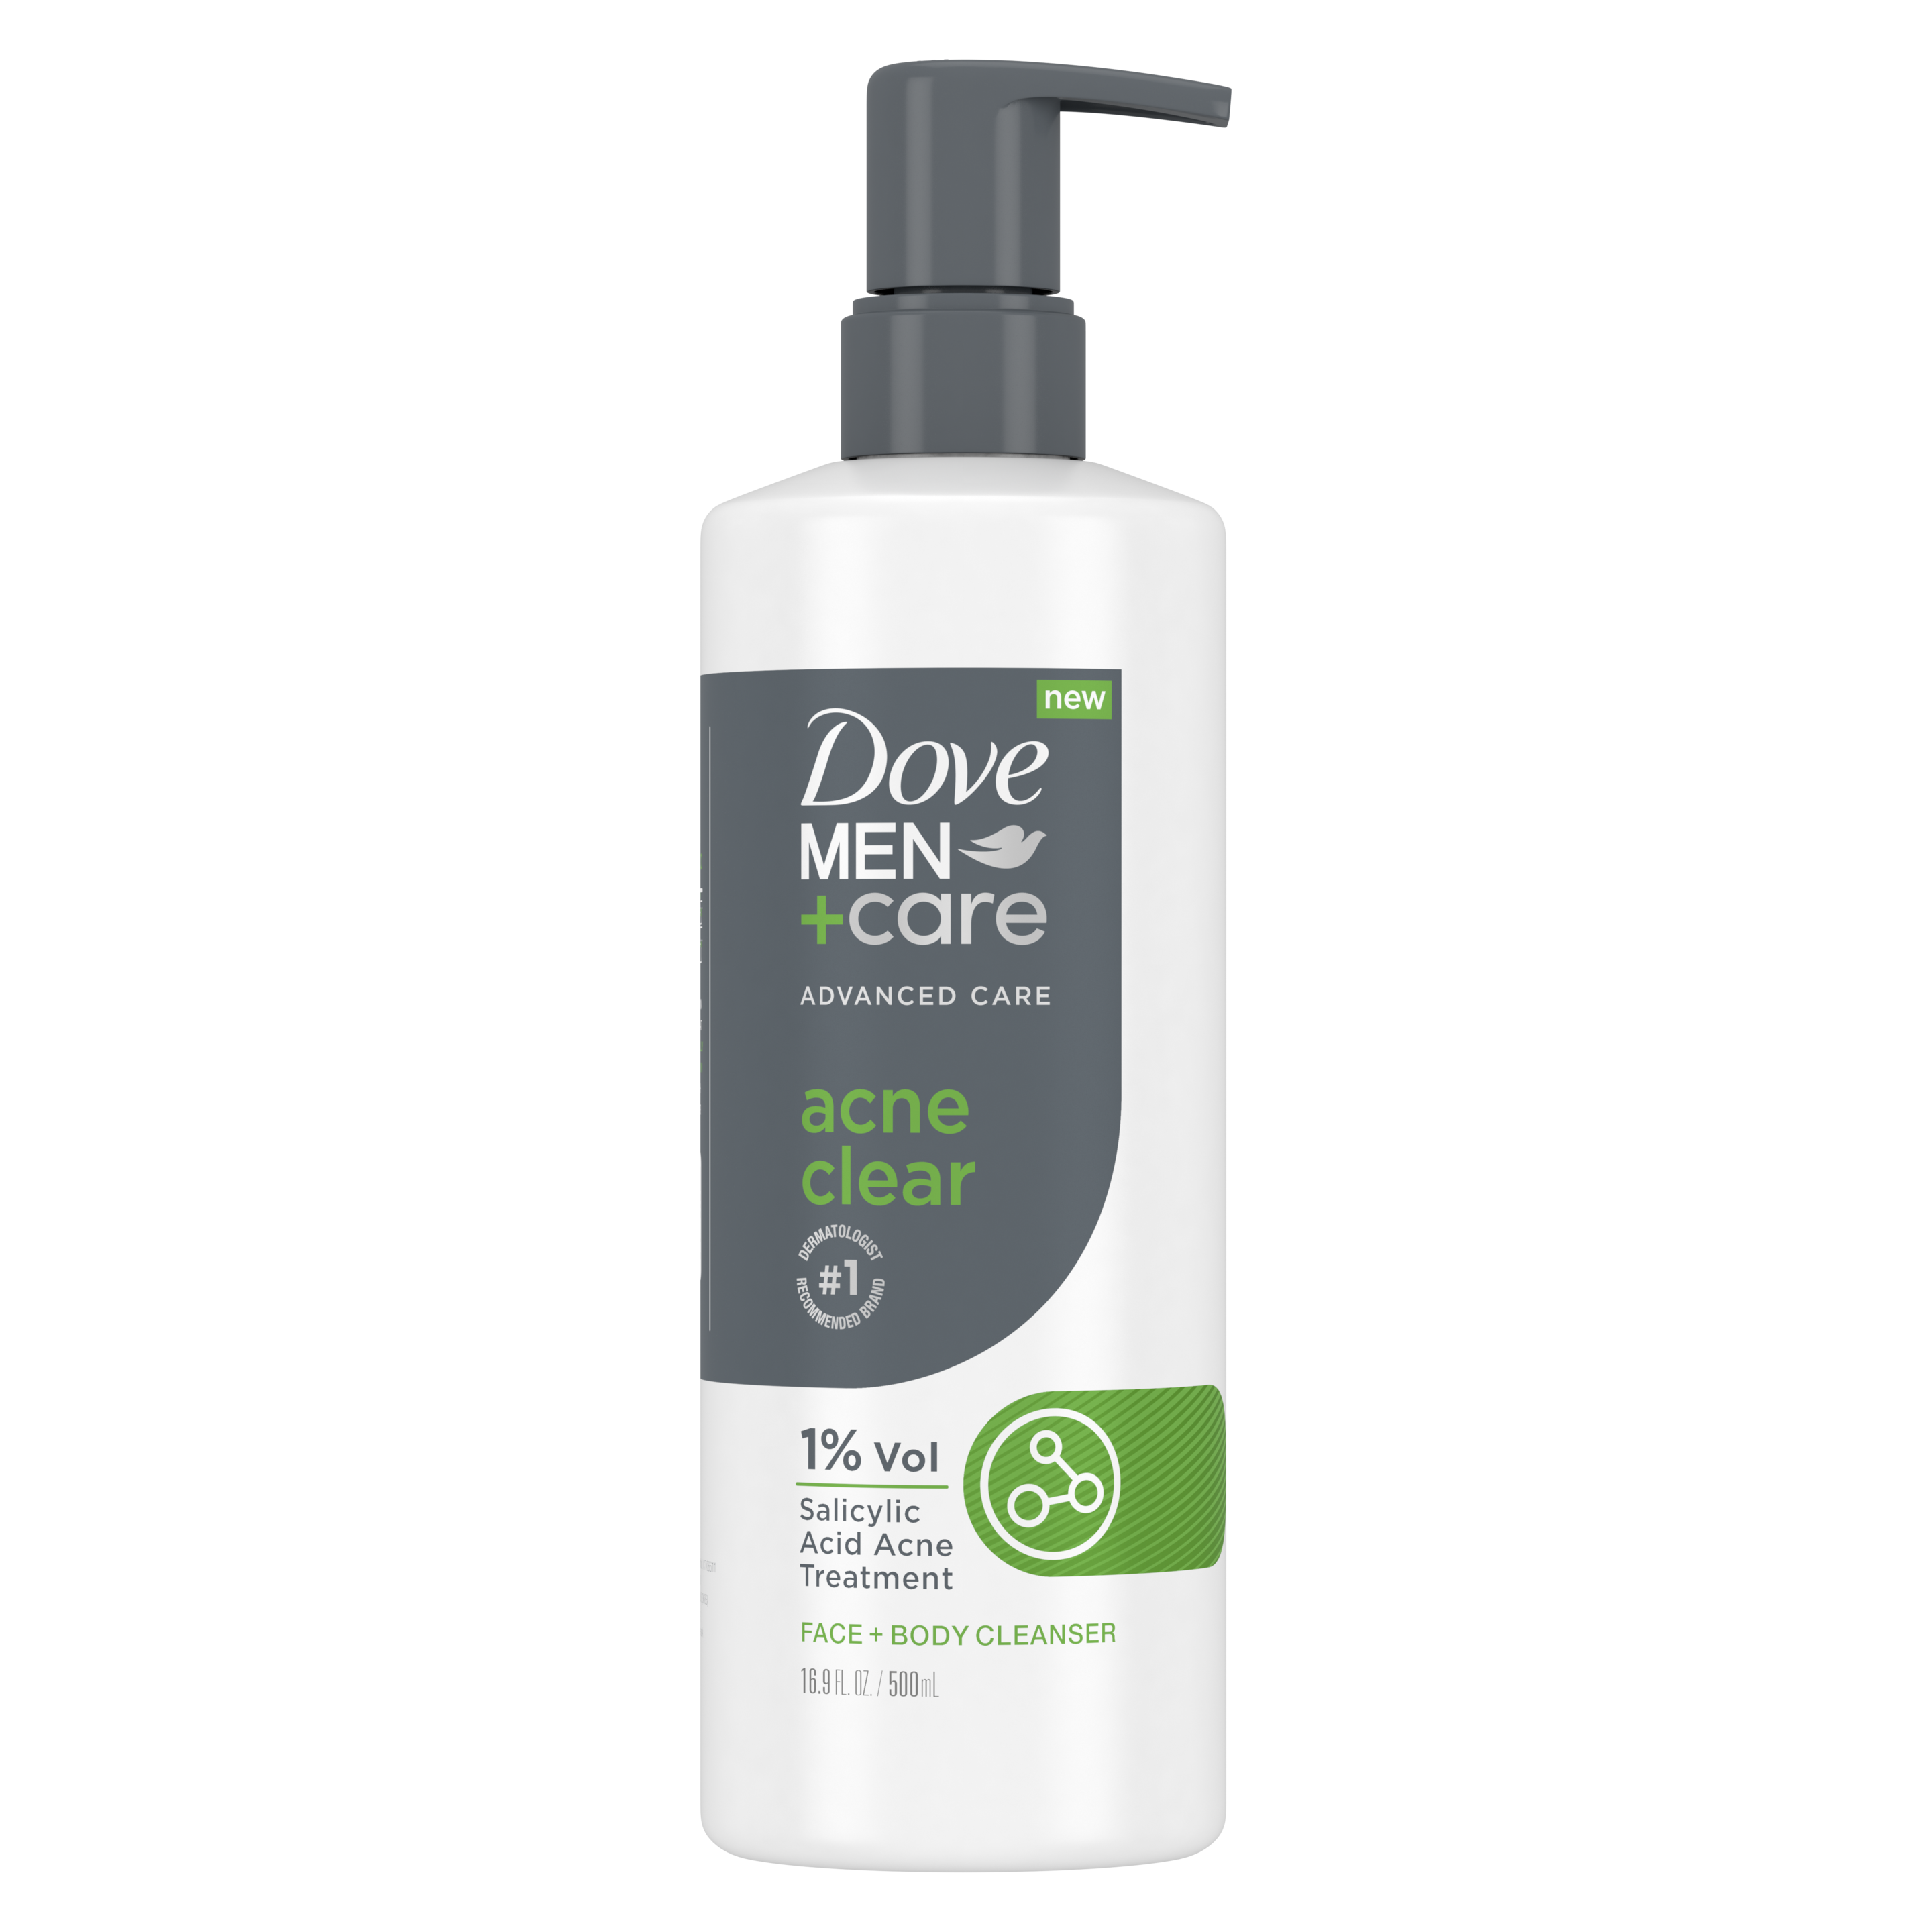 Dove Men+Care Advanced Care Acne Clear Face + Body Wash